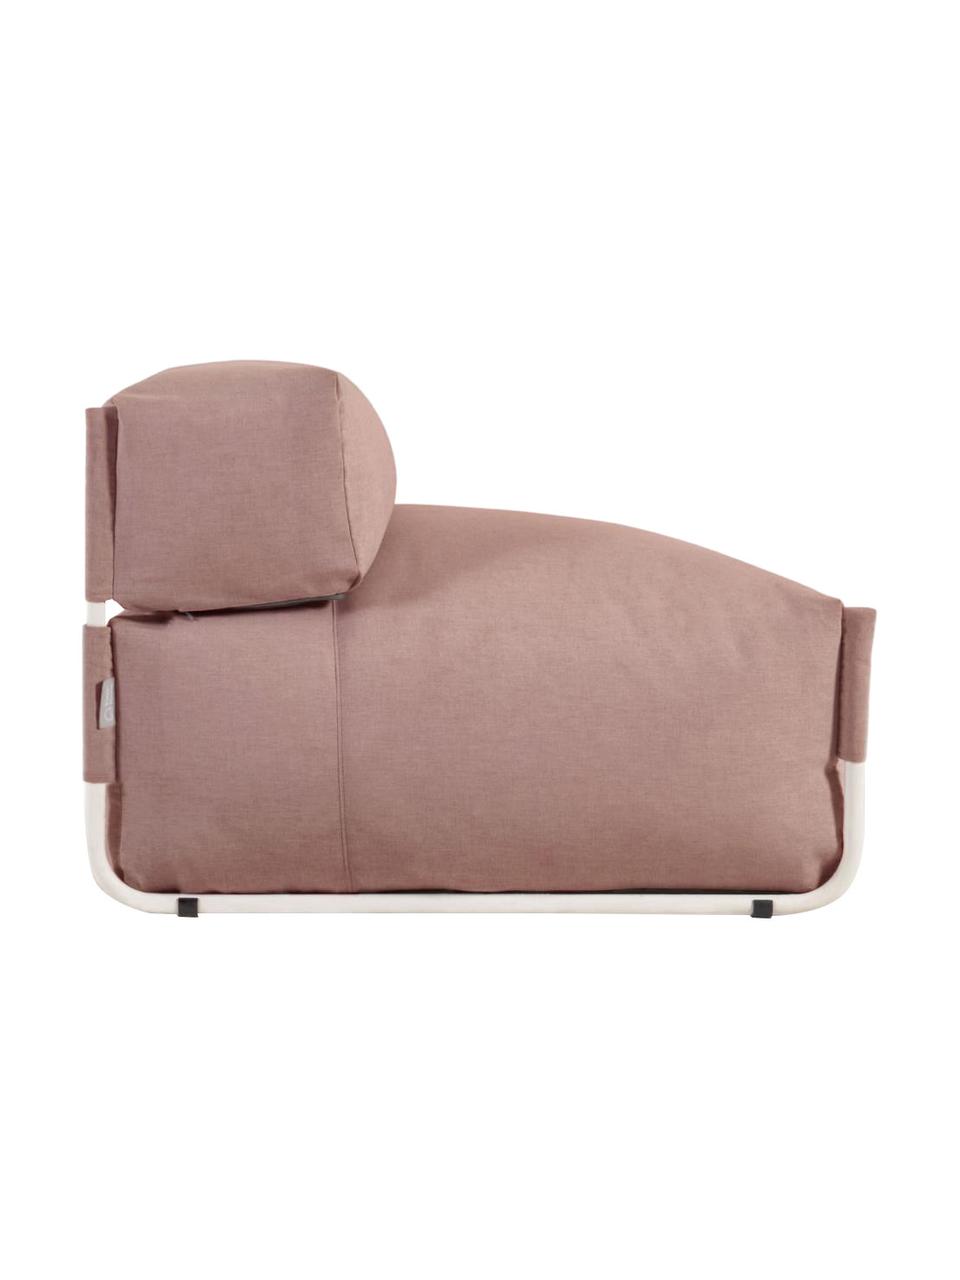 Zewnętrzny fotel wypoczynkowy Square, Tapicerka: poliester, polipropylen, , Stelaż: aluminium lakierowane, Blady różowy, S 101 x G 101 cm